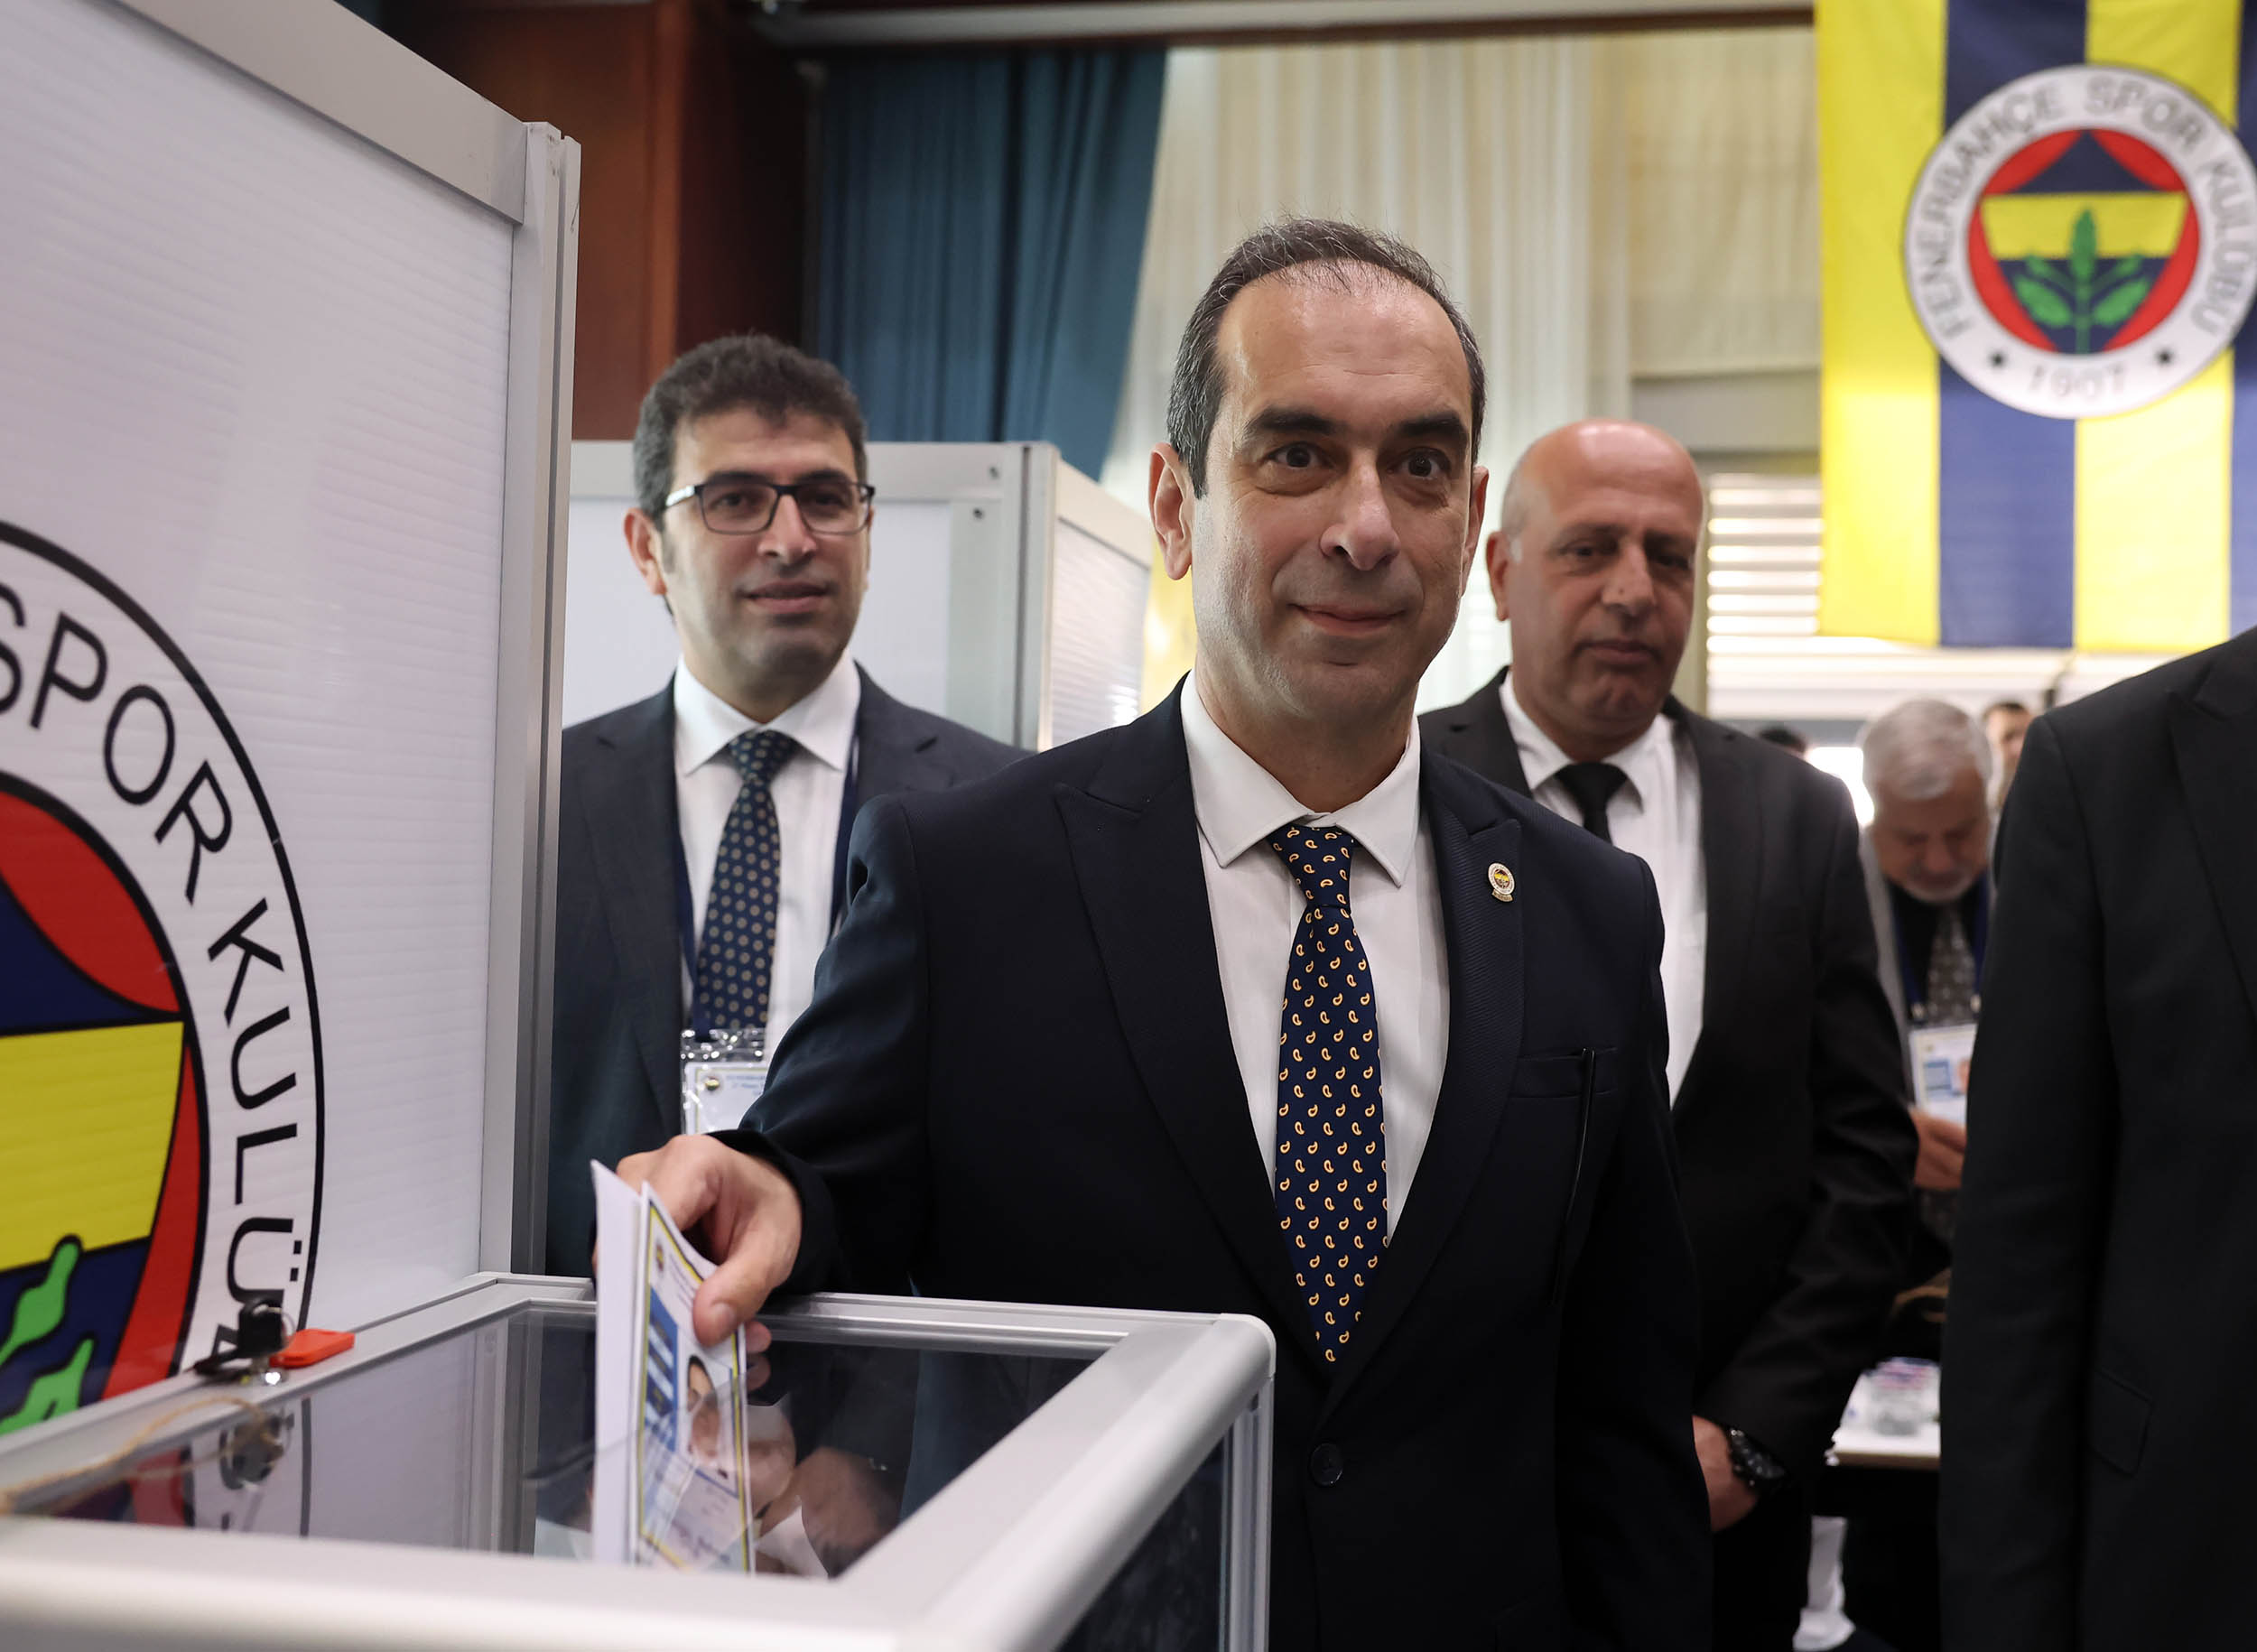 Fenerbahçe Yüksek Divan Kurulu'ndaki başkanlık seçimini 1177 oy alan Şekip Mosturoğlu kazandı.